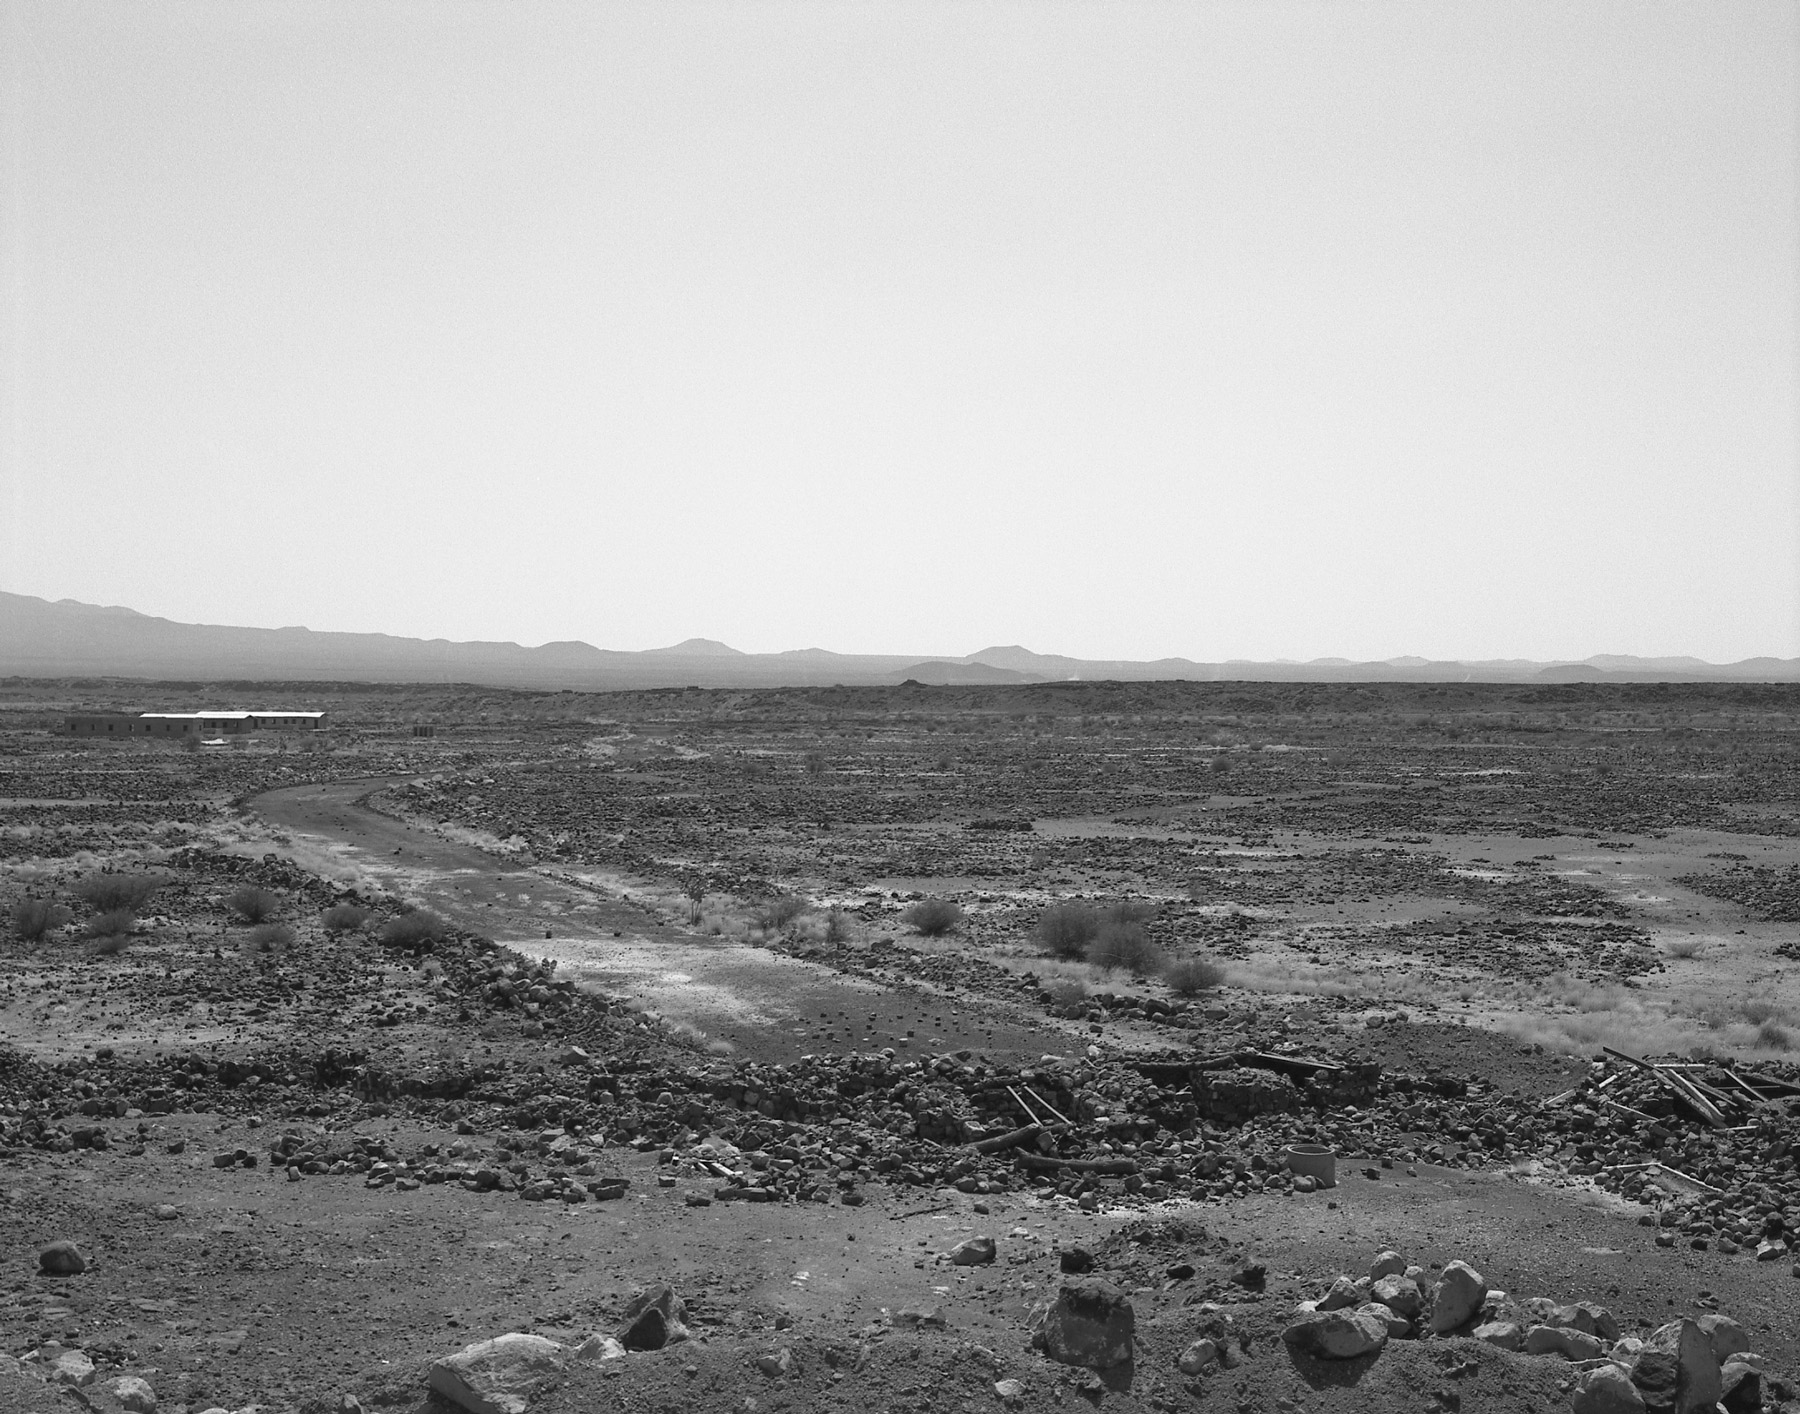 Anne-Marie Filaire, Zone de sécurité temporaire, désert du Danakil, Erythrée, novembre 2001.